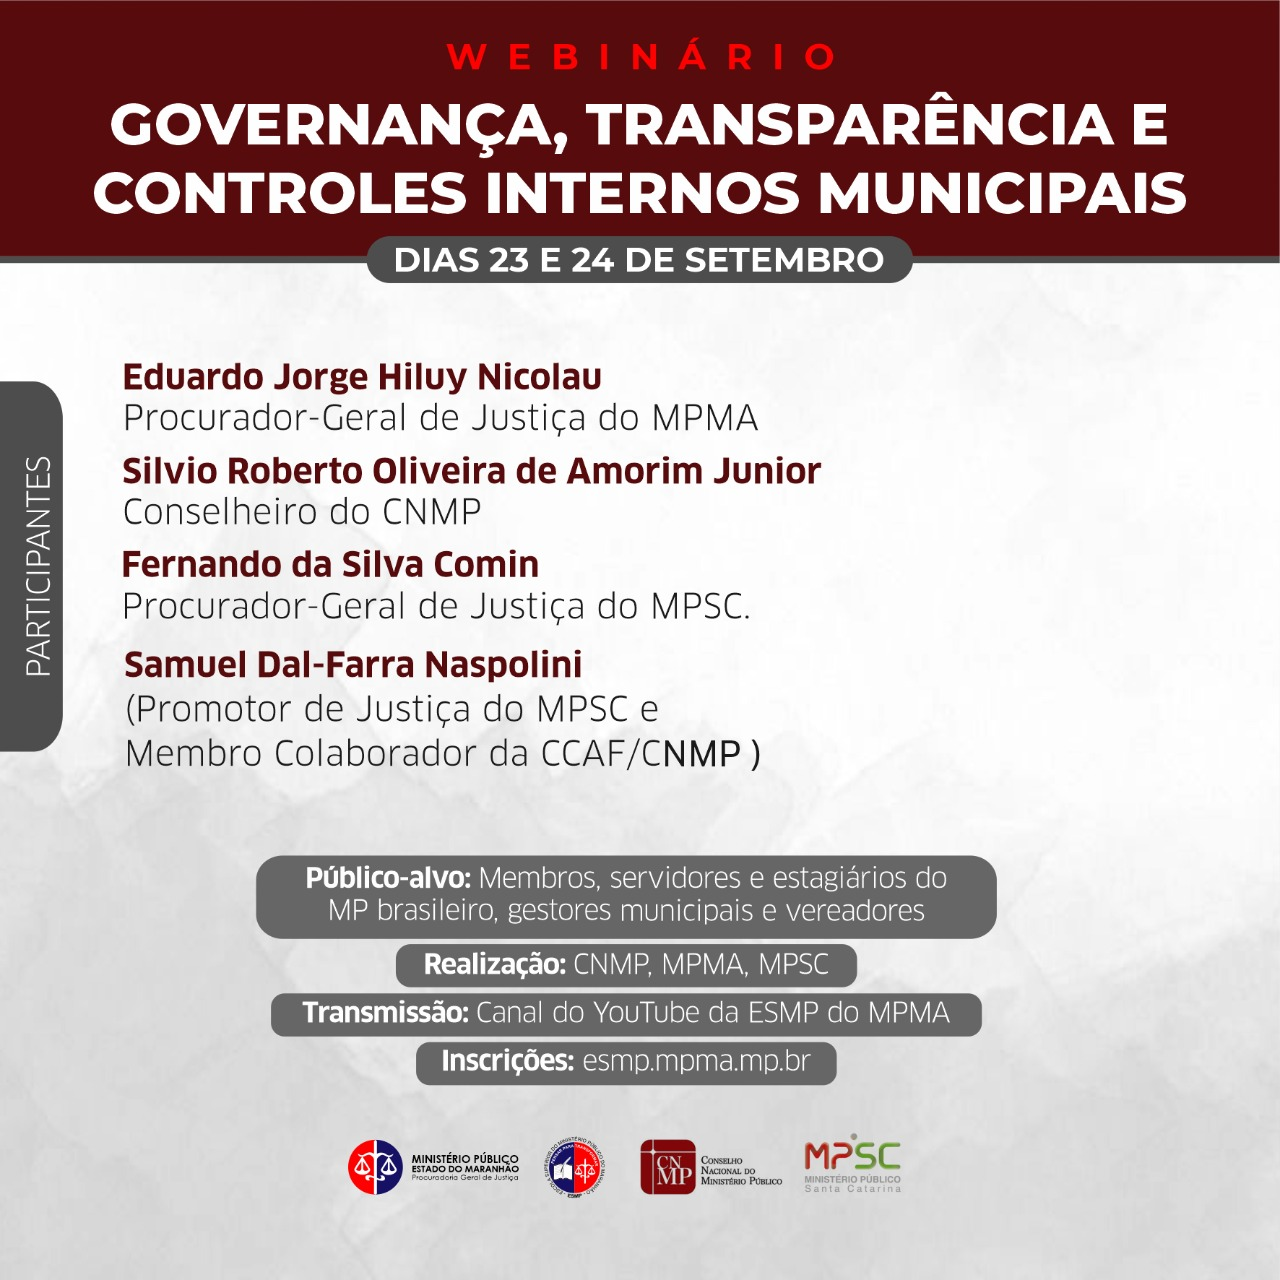 Webinário - Governança, Transparência e Controles Internos Municipais